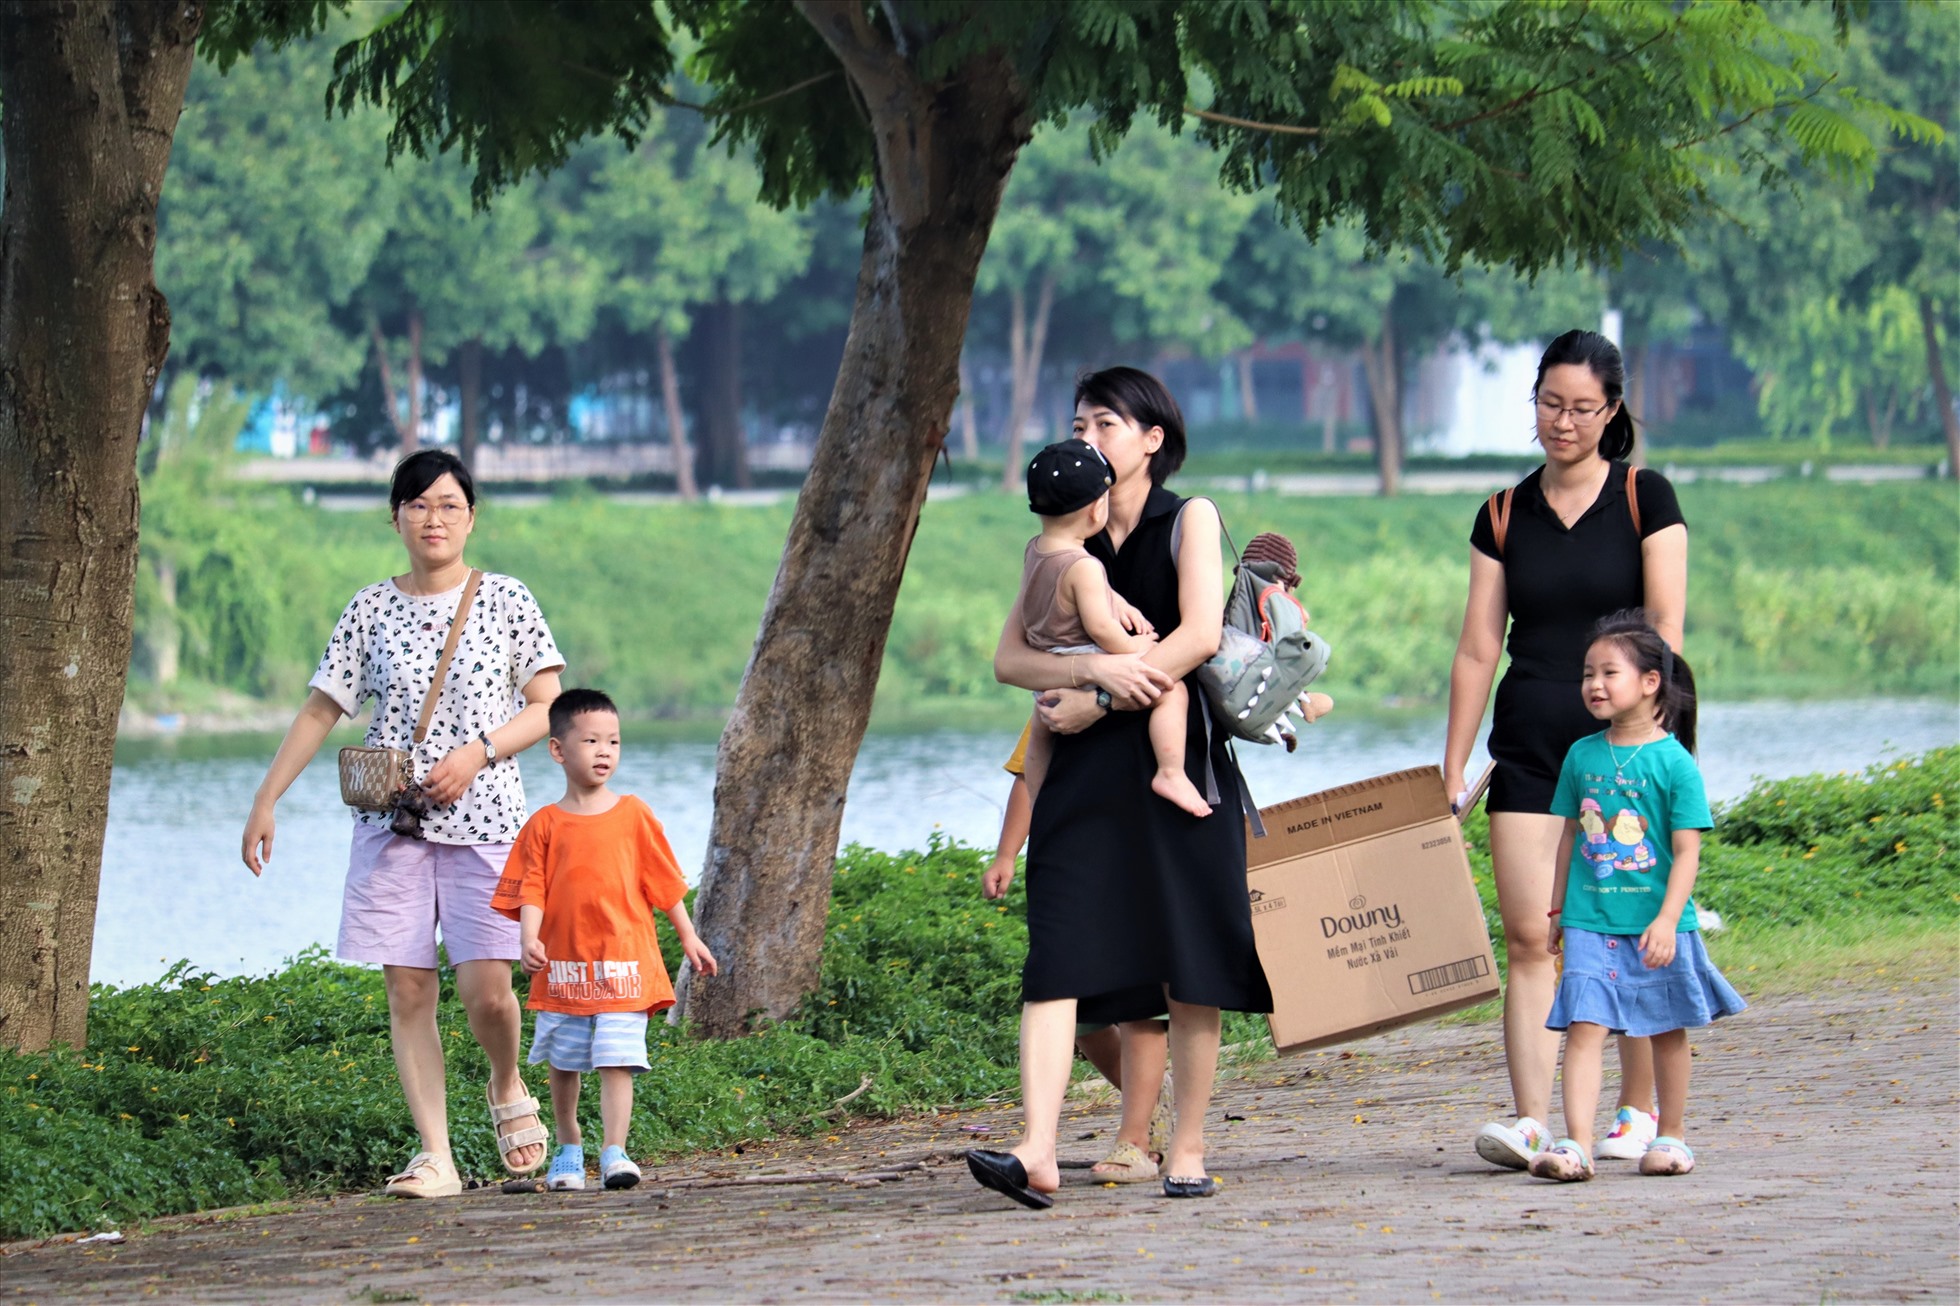 Thay vì về quê và đi chơi xa, nhiều người dân Hà Nội lựa chọn công viên Yên Sở bởi công viên này có vị trí khá gần trung tâm.